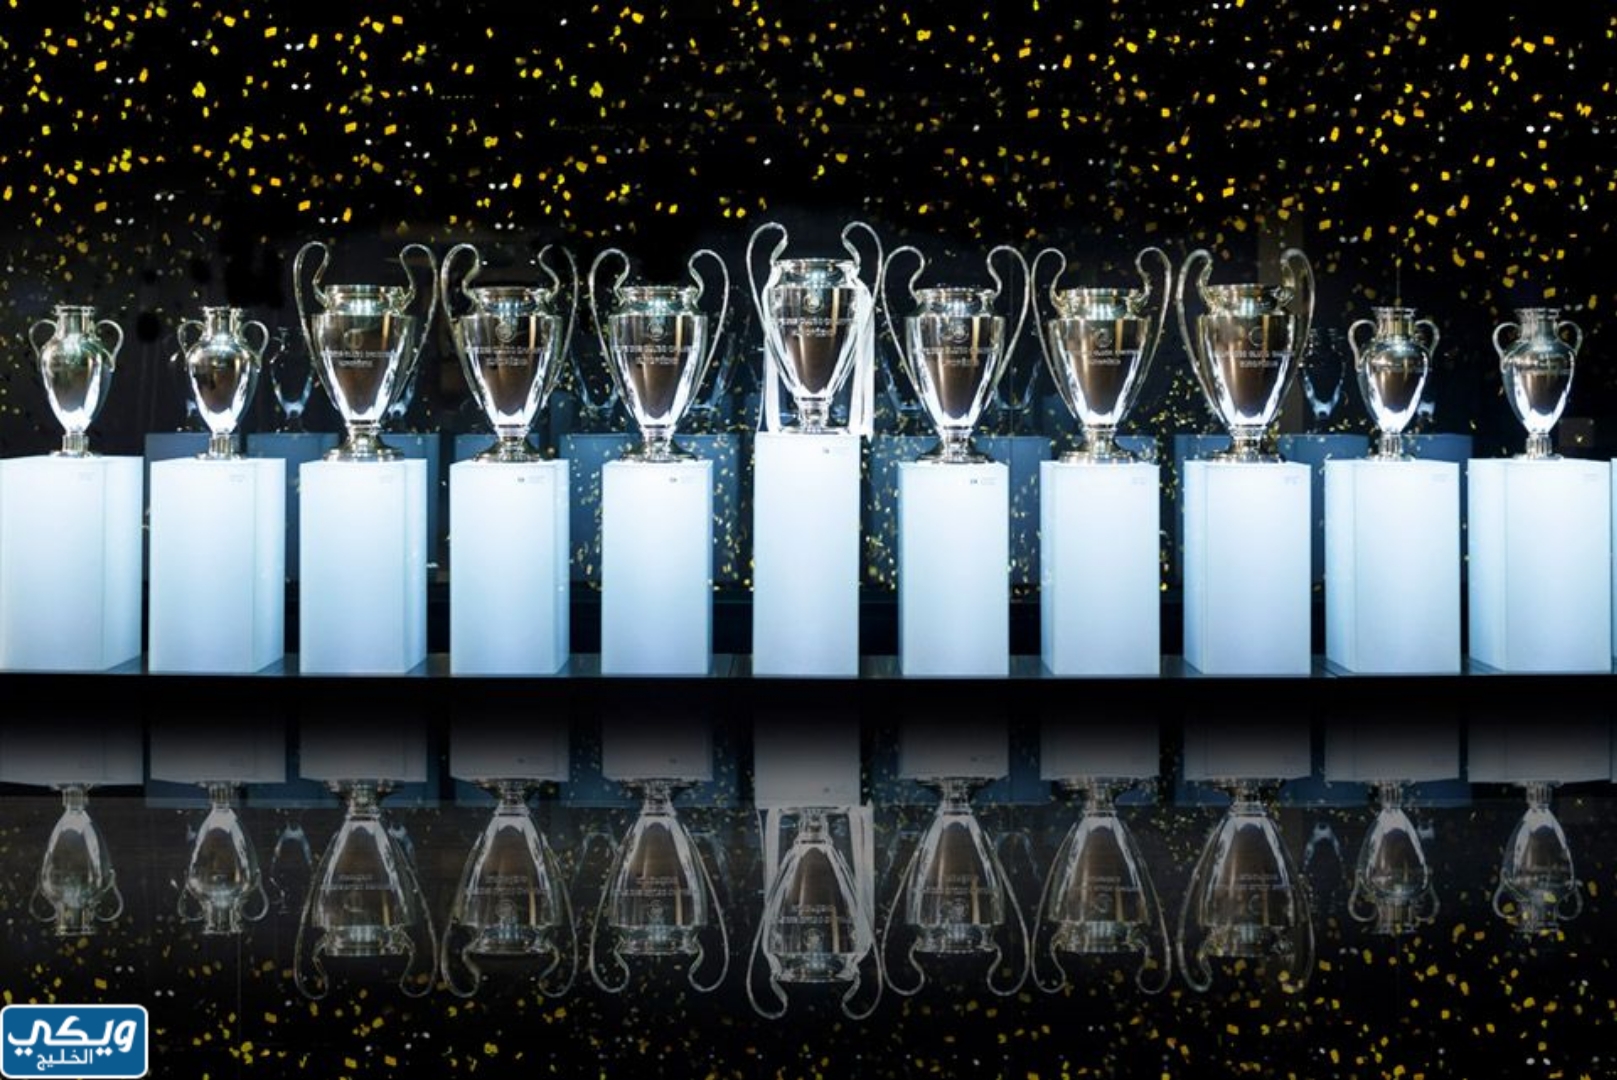 كؤوس دوري أبطال أوروبا التي حققها ريال مدريد